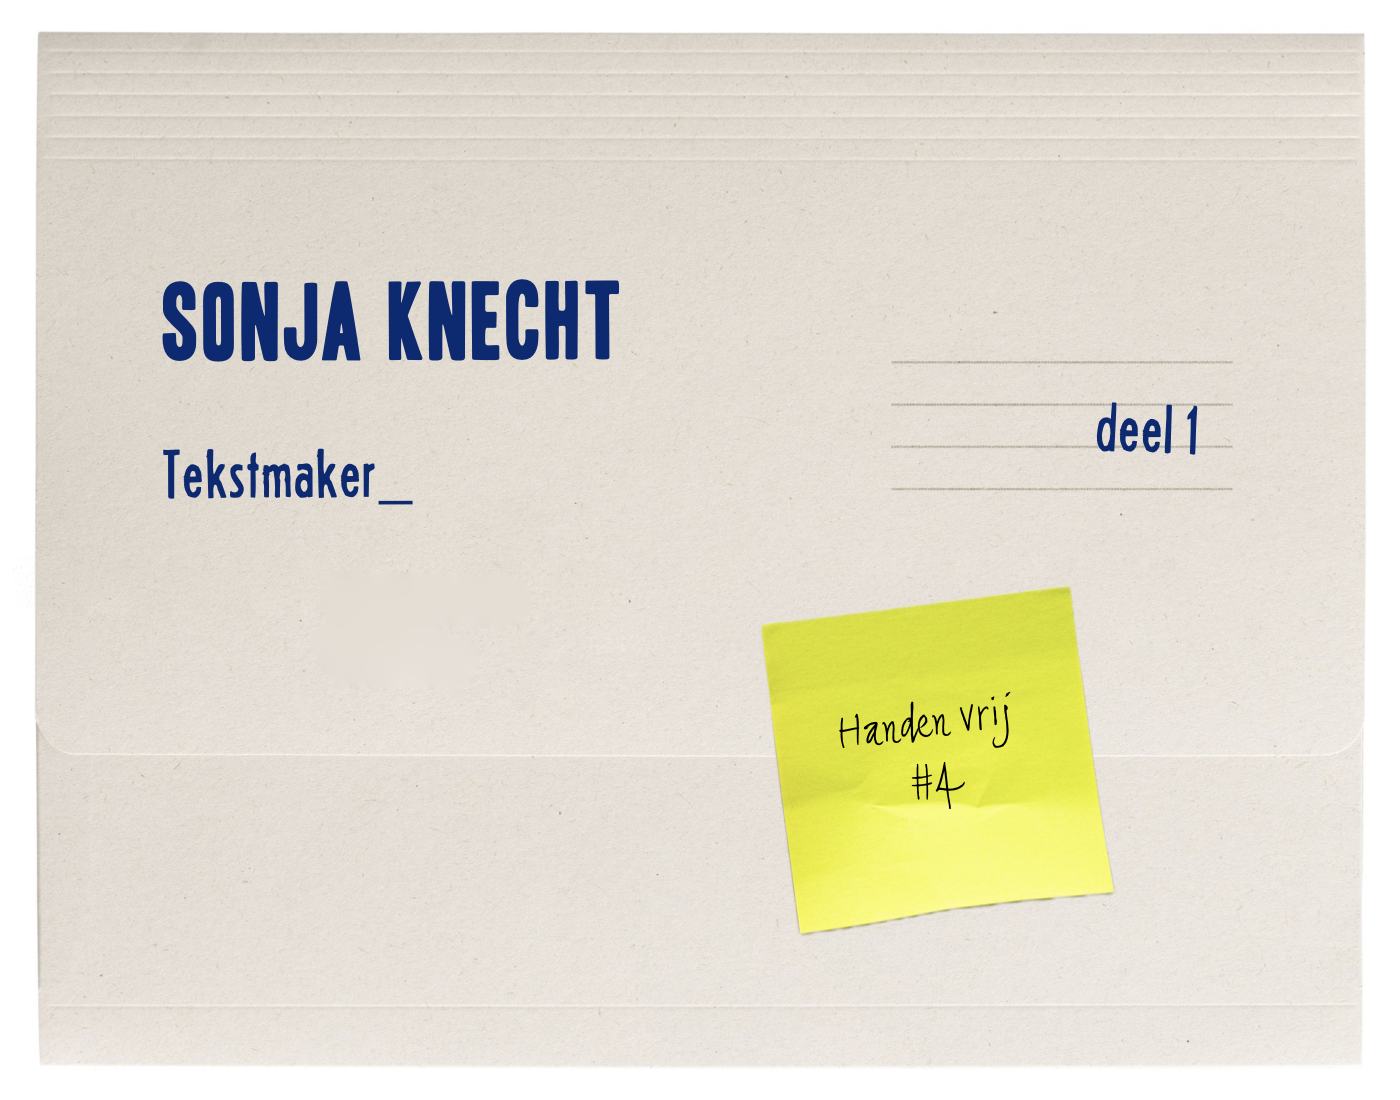 Handen vrij – Sonja Knecht, tekstmaker (1)